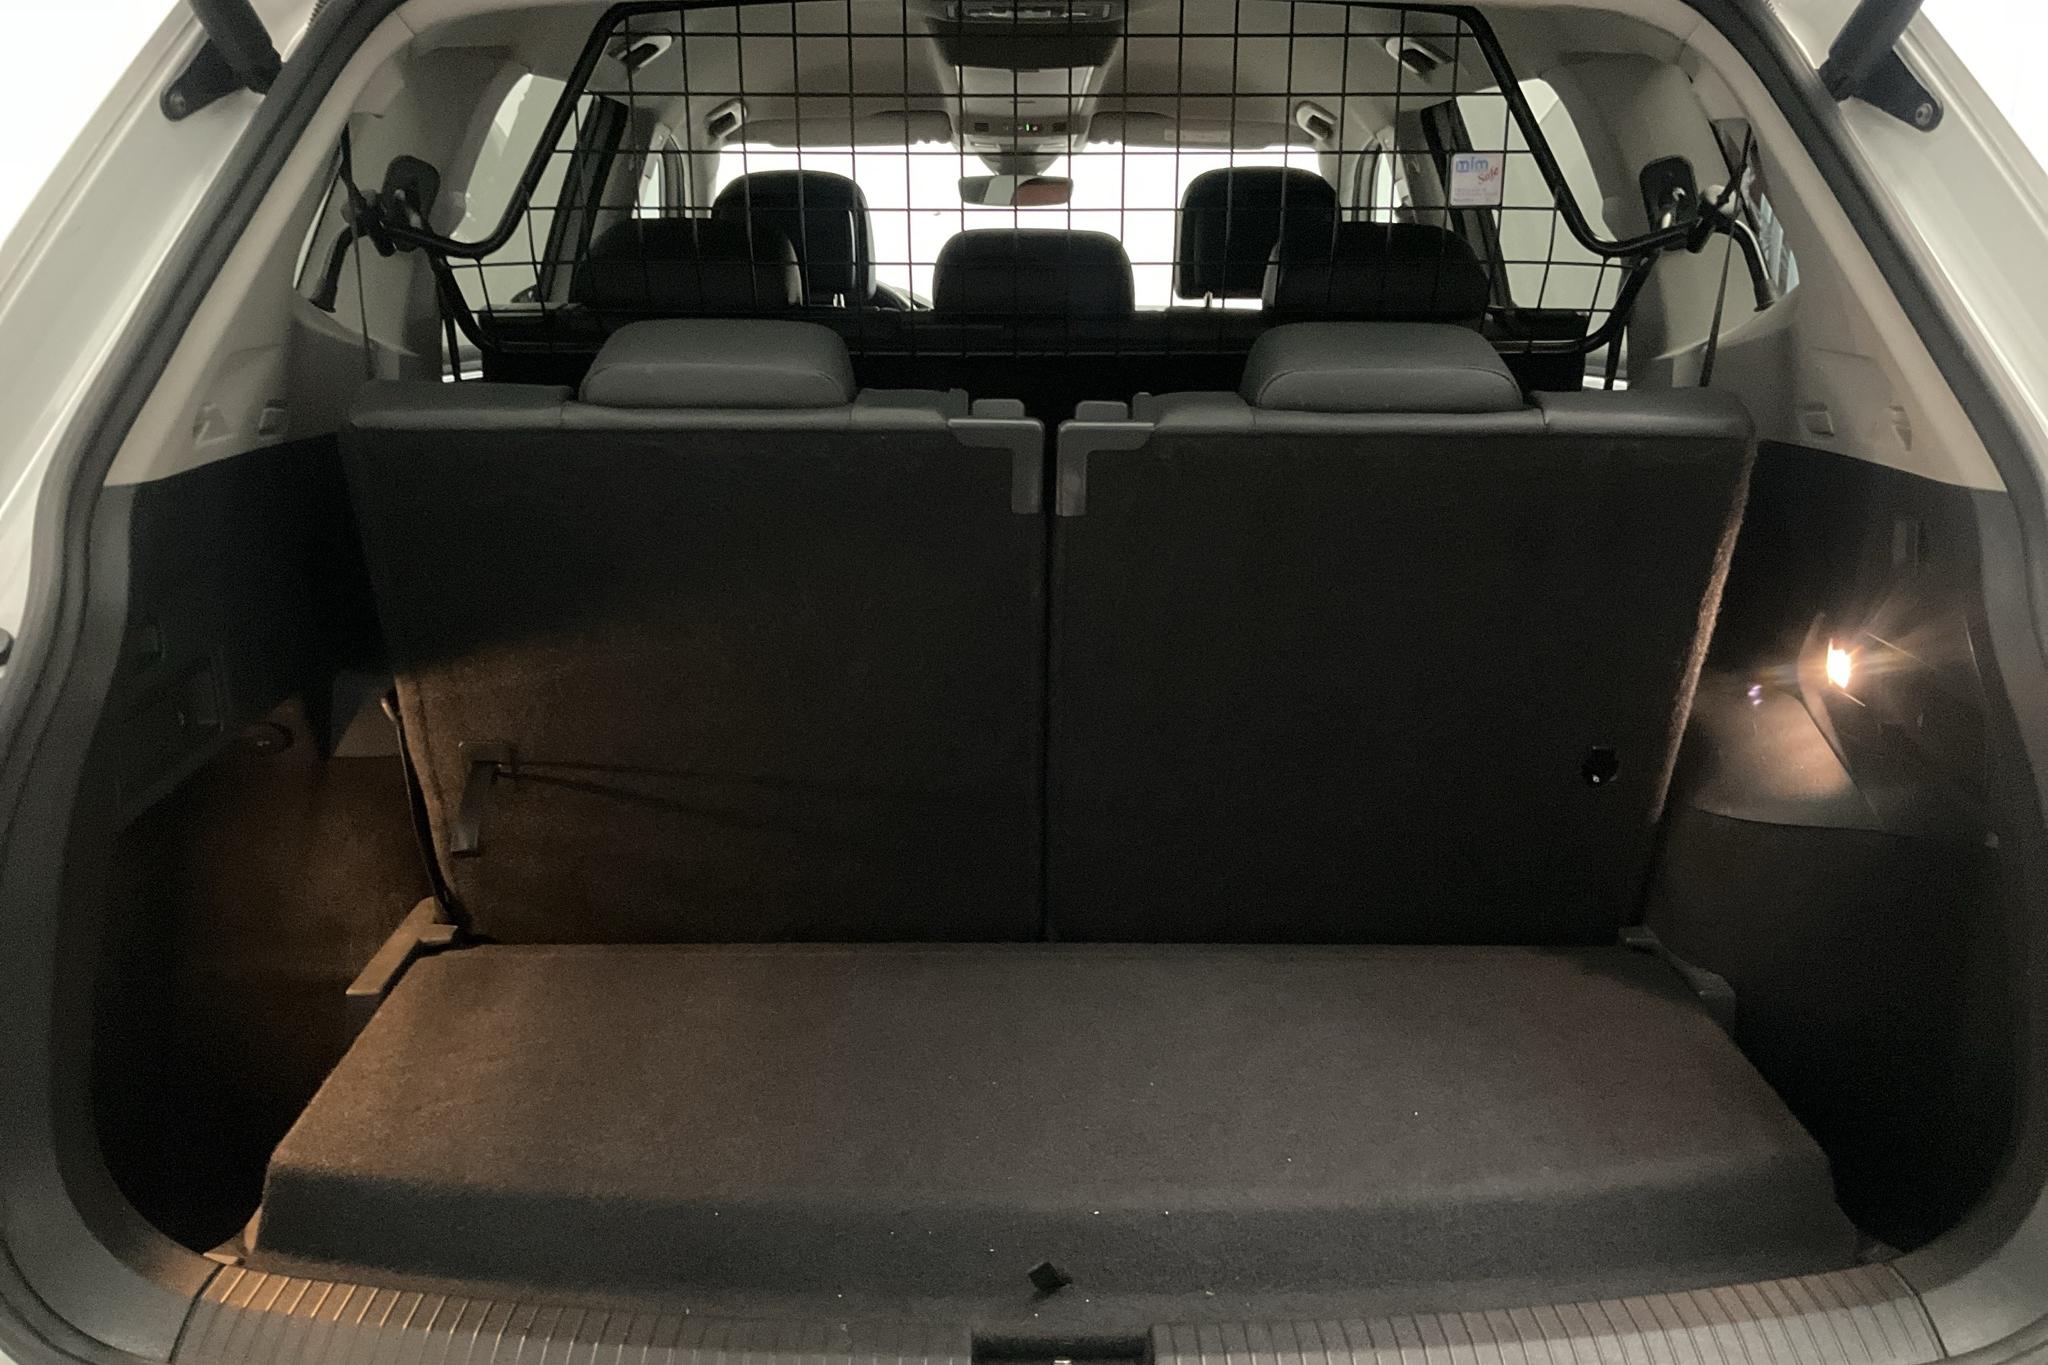 VW Tiguan Allspace 2.0 TDI 4MOTION (190hk) - 272 430 km - Automatyczna - biały - 2020